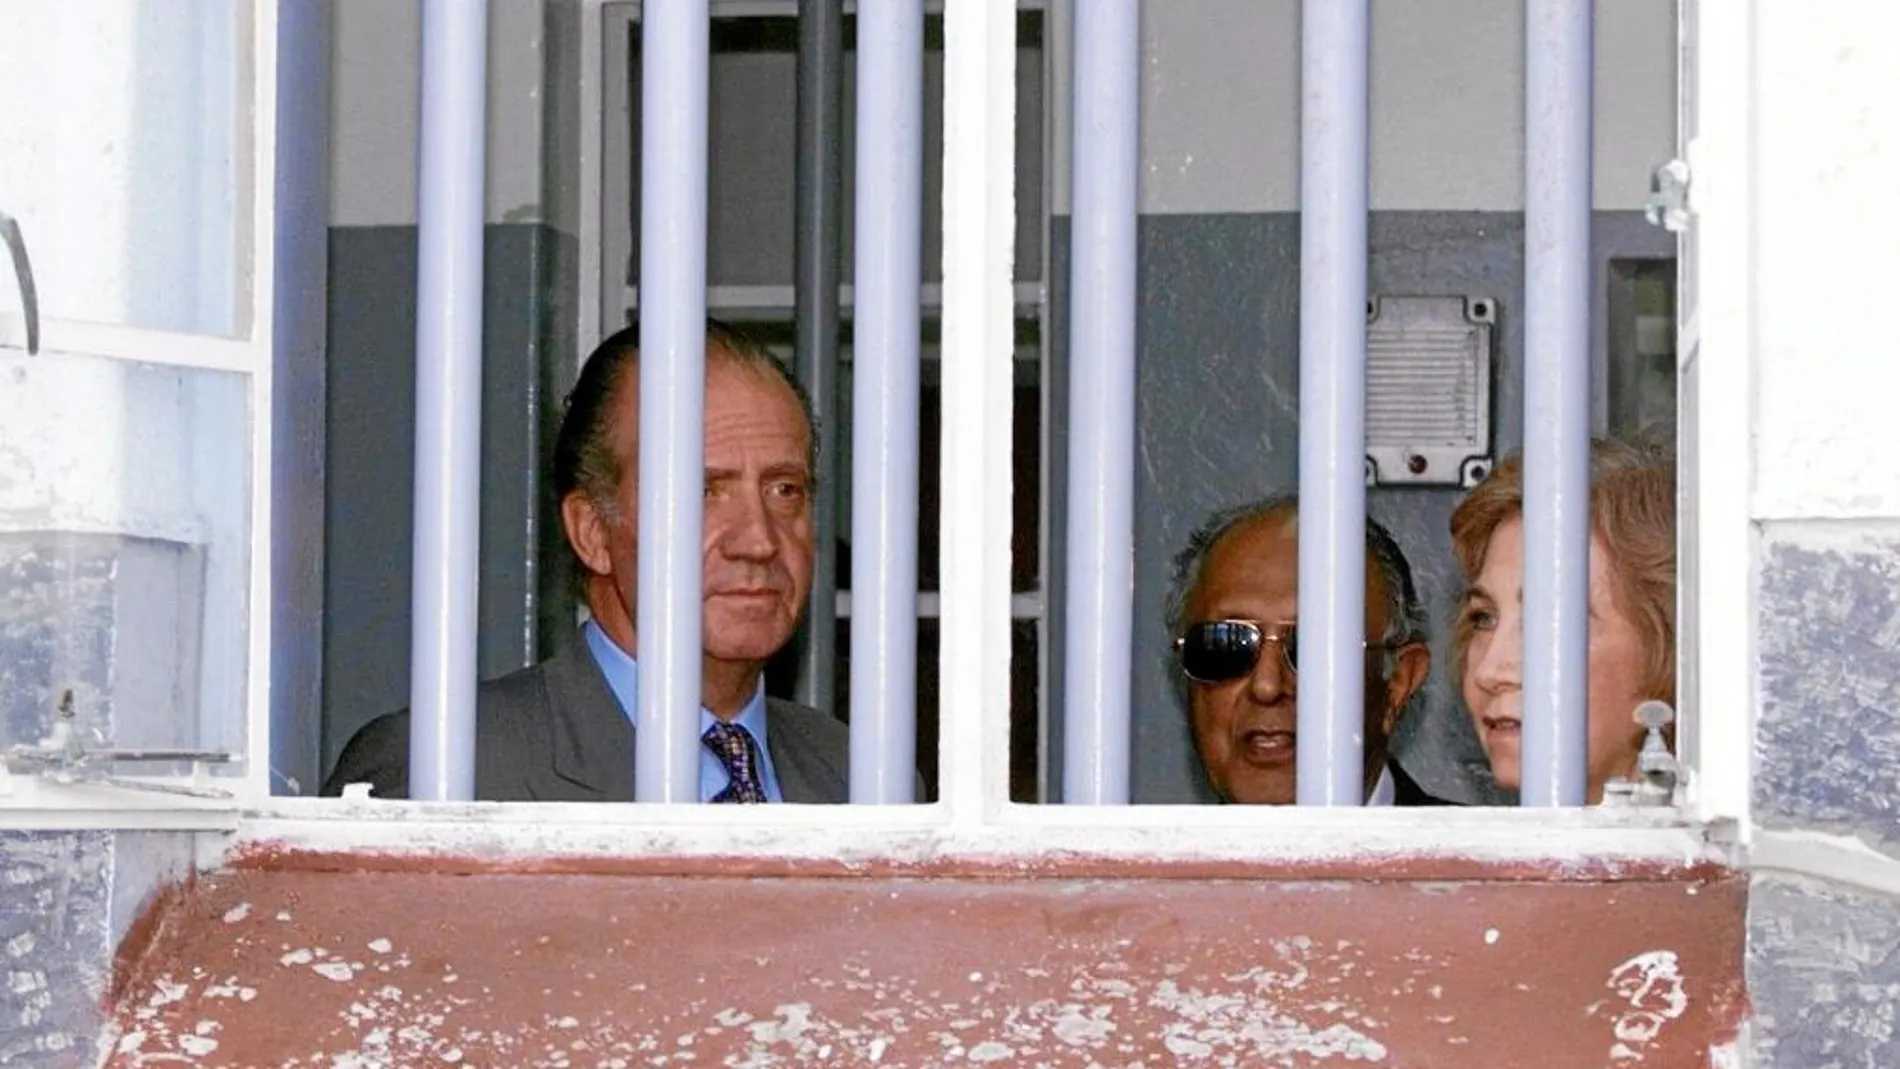 Los Reyes de España, durante su visita a la celda de Mandela, en Robben Island